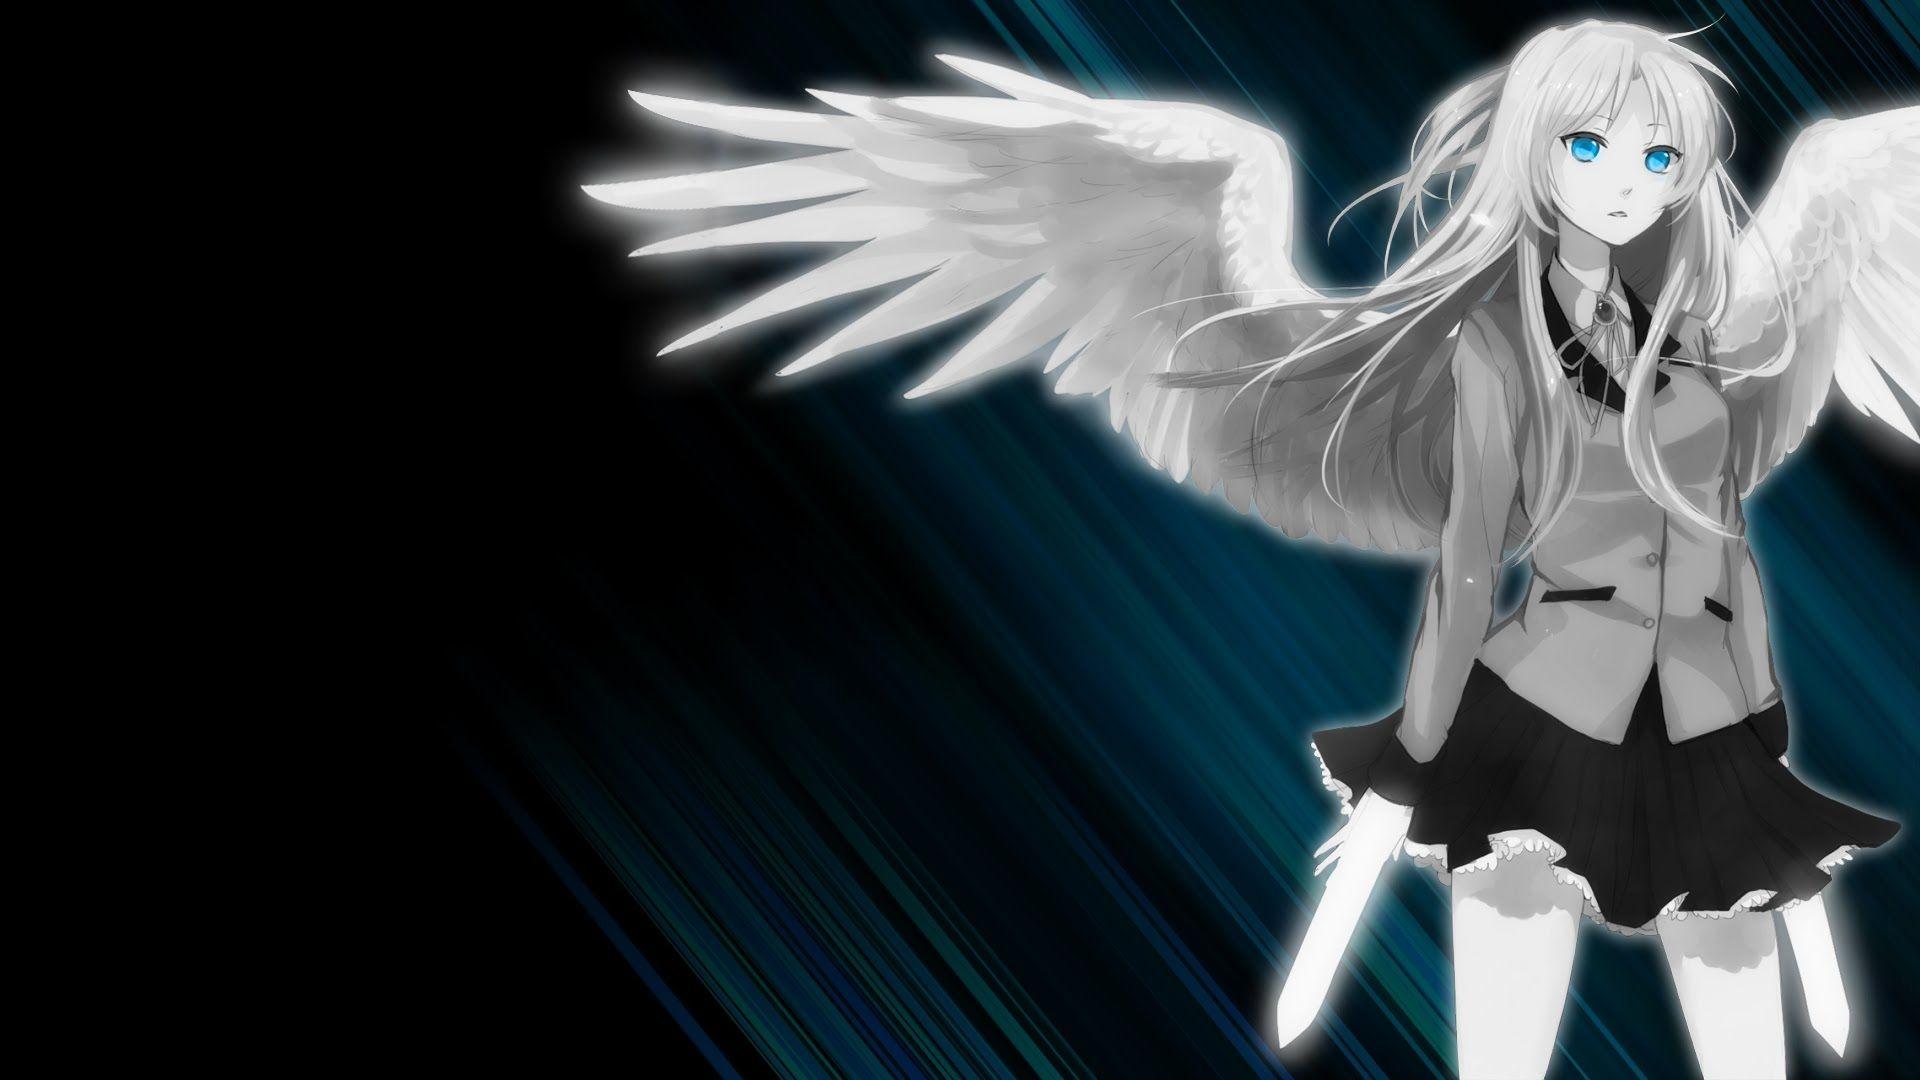 Fallen Angel Anime Girl Wallpaper .wallpaperaccess.com